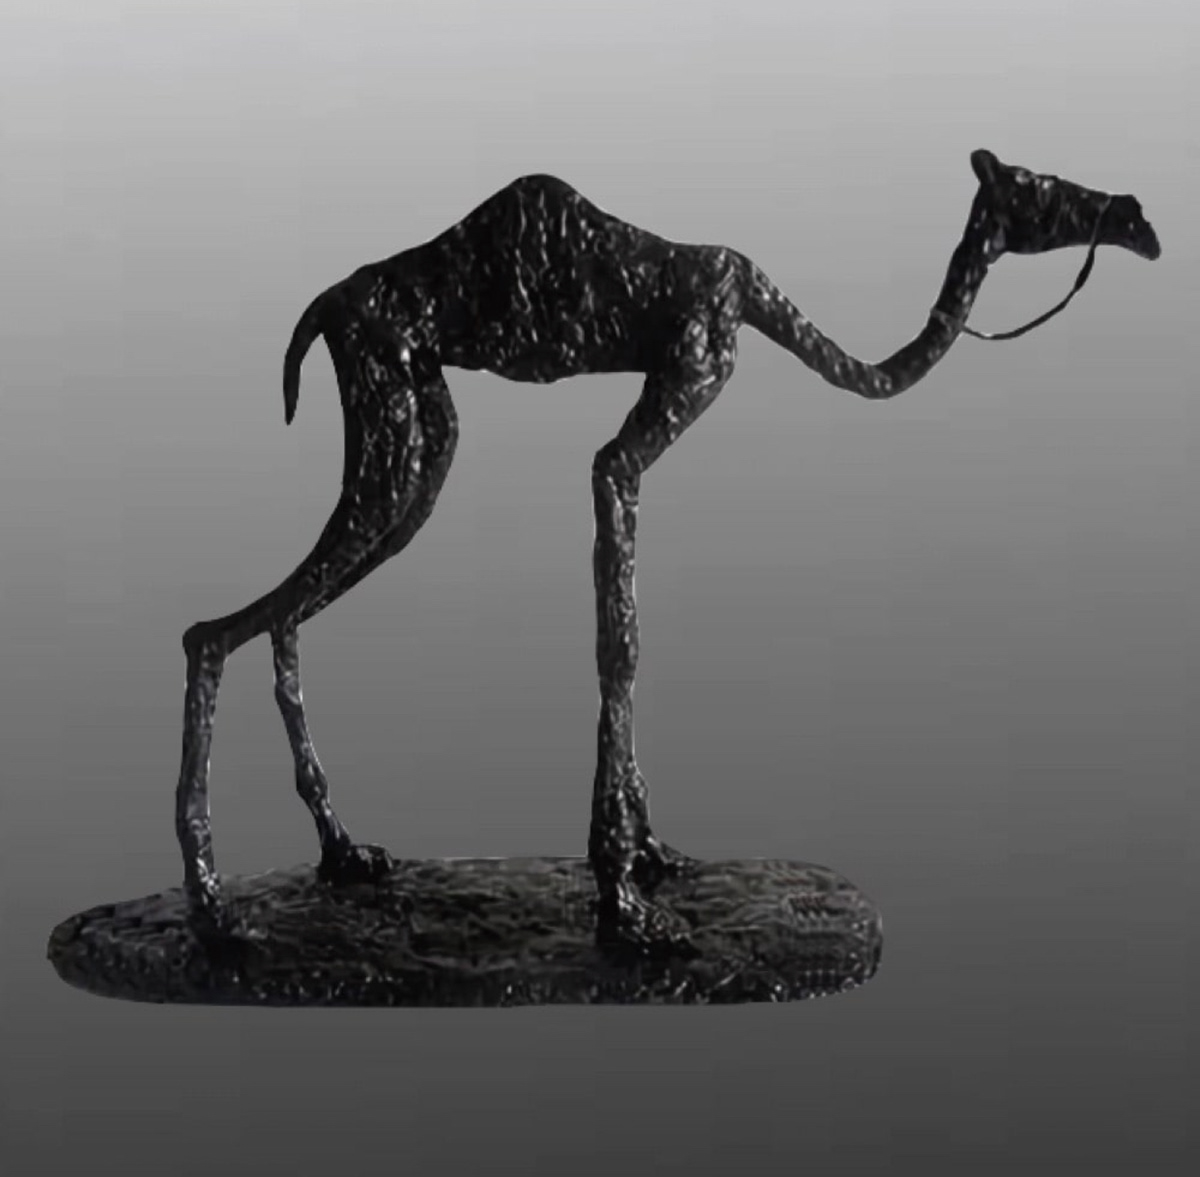 верблюд дизайн интерьера импрессионизм интерьер садовый дизайн скульптура сюрреализм   трэшарт